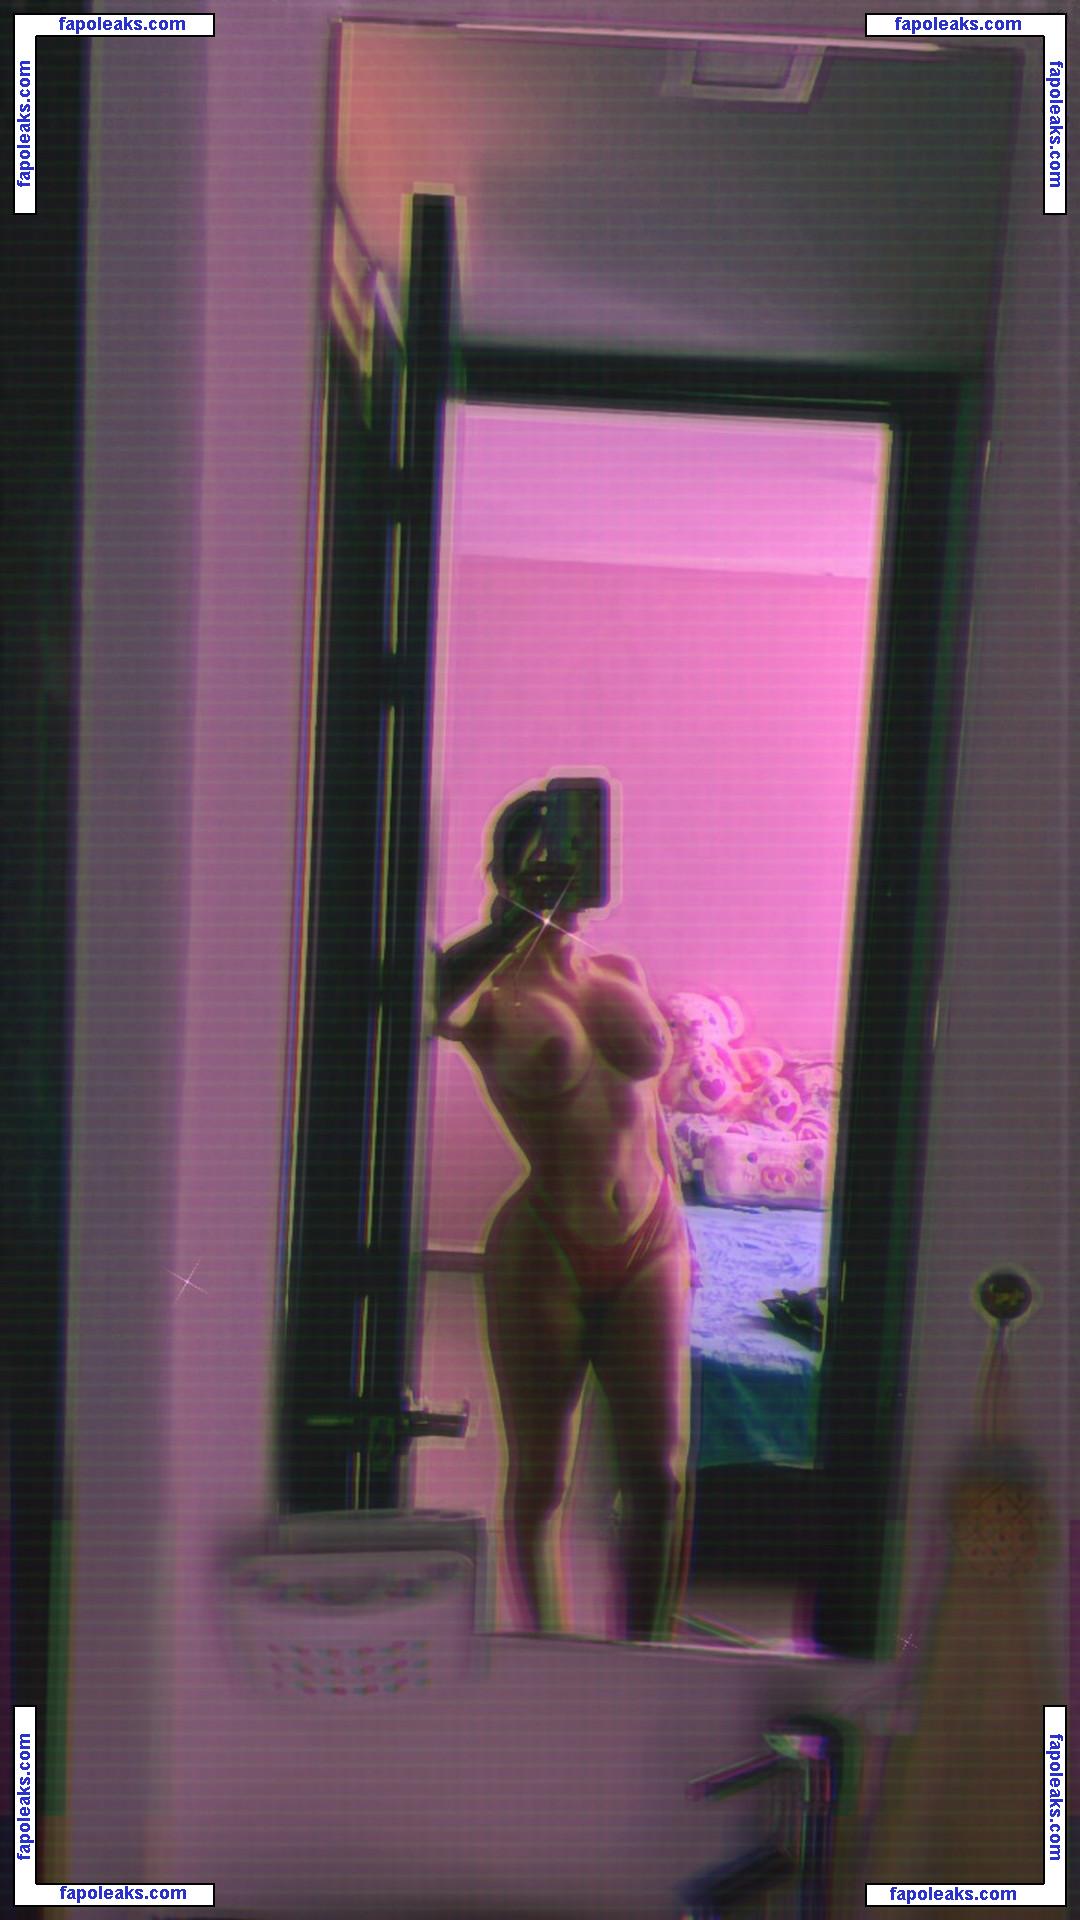 Maria Alejandra Cardenas / Mariacardenaas / alejaandracardenas nude photo #0007 from OnlyFans